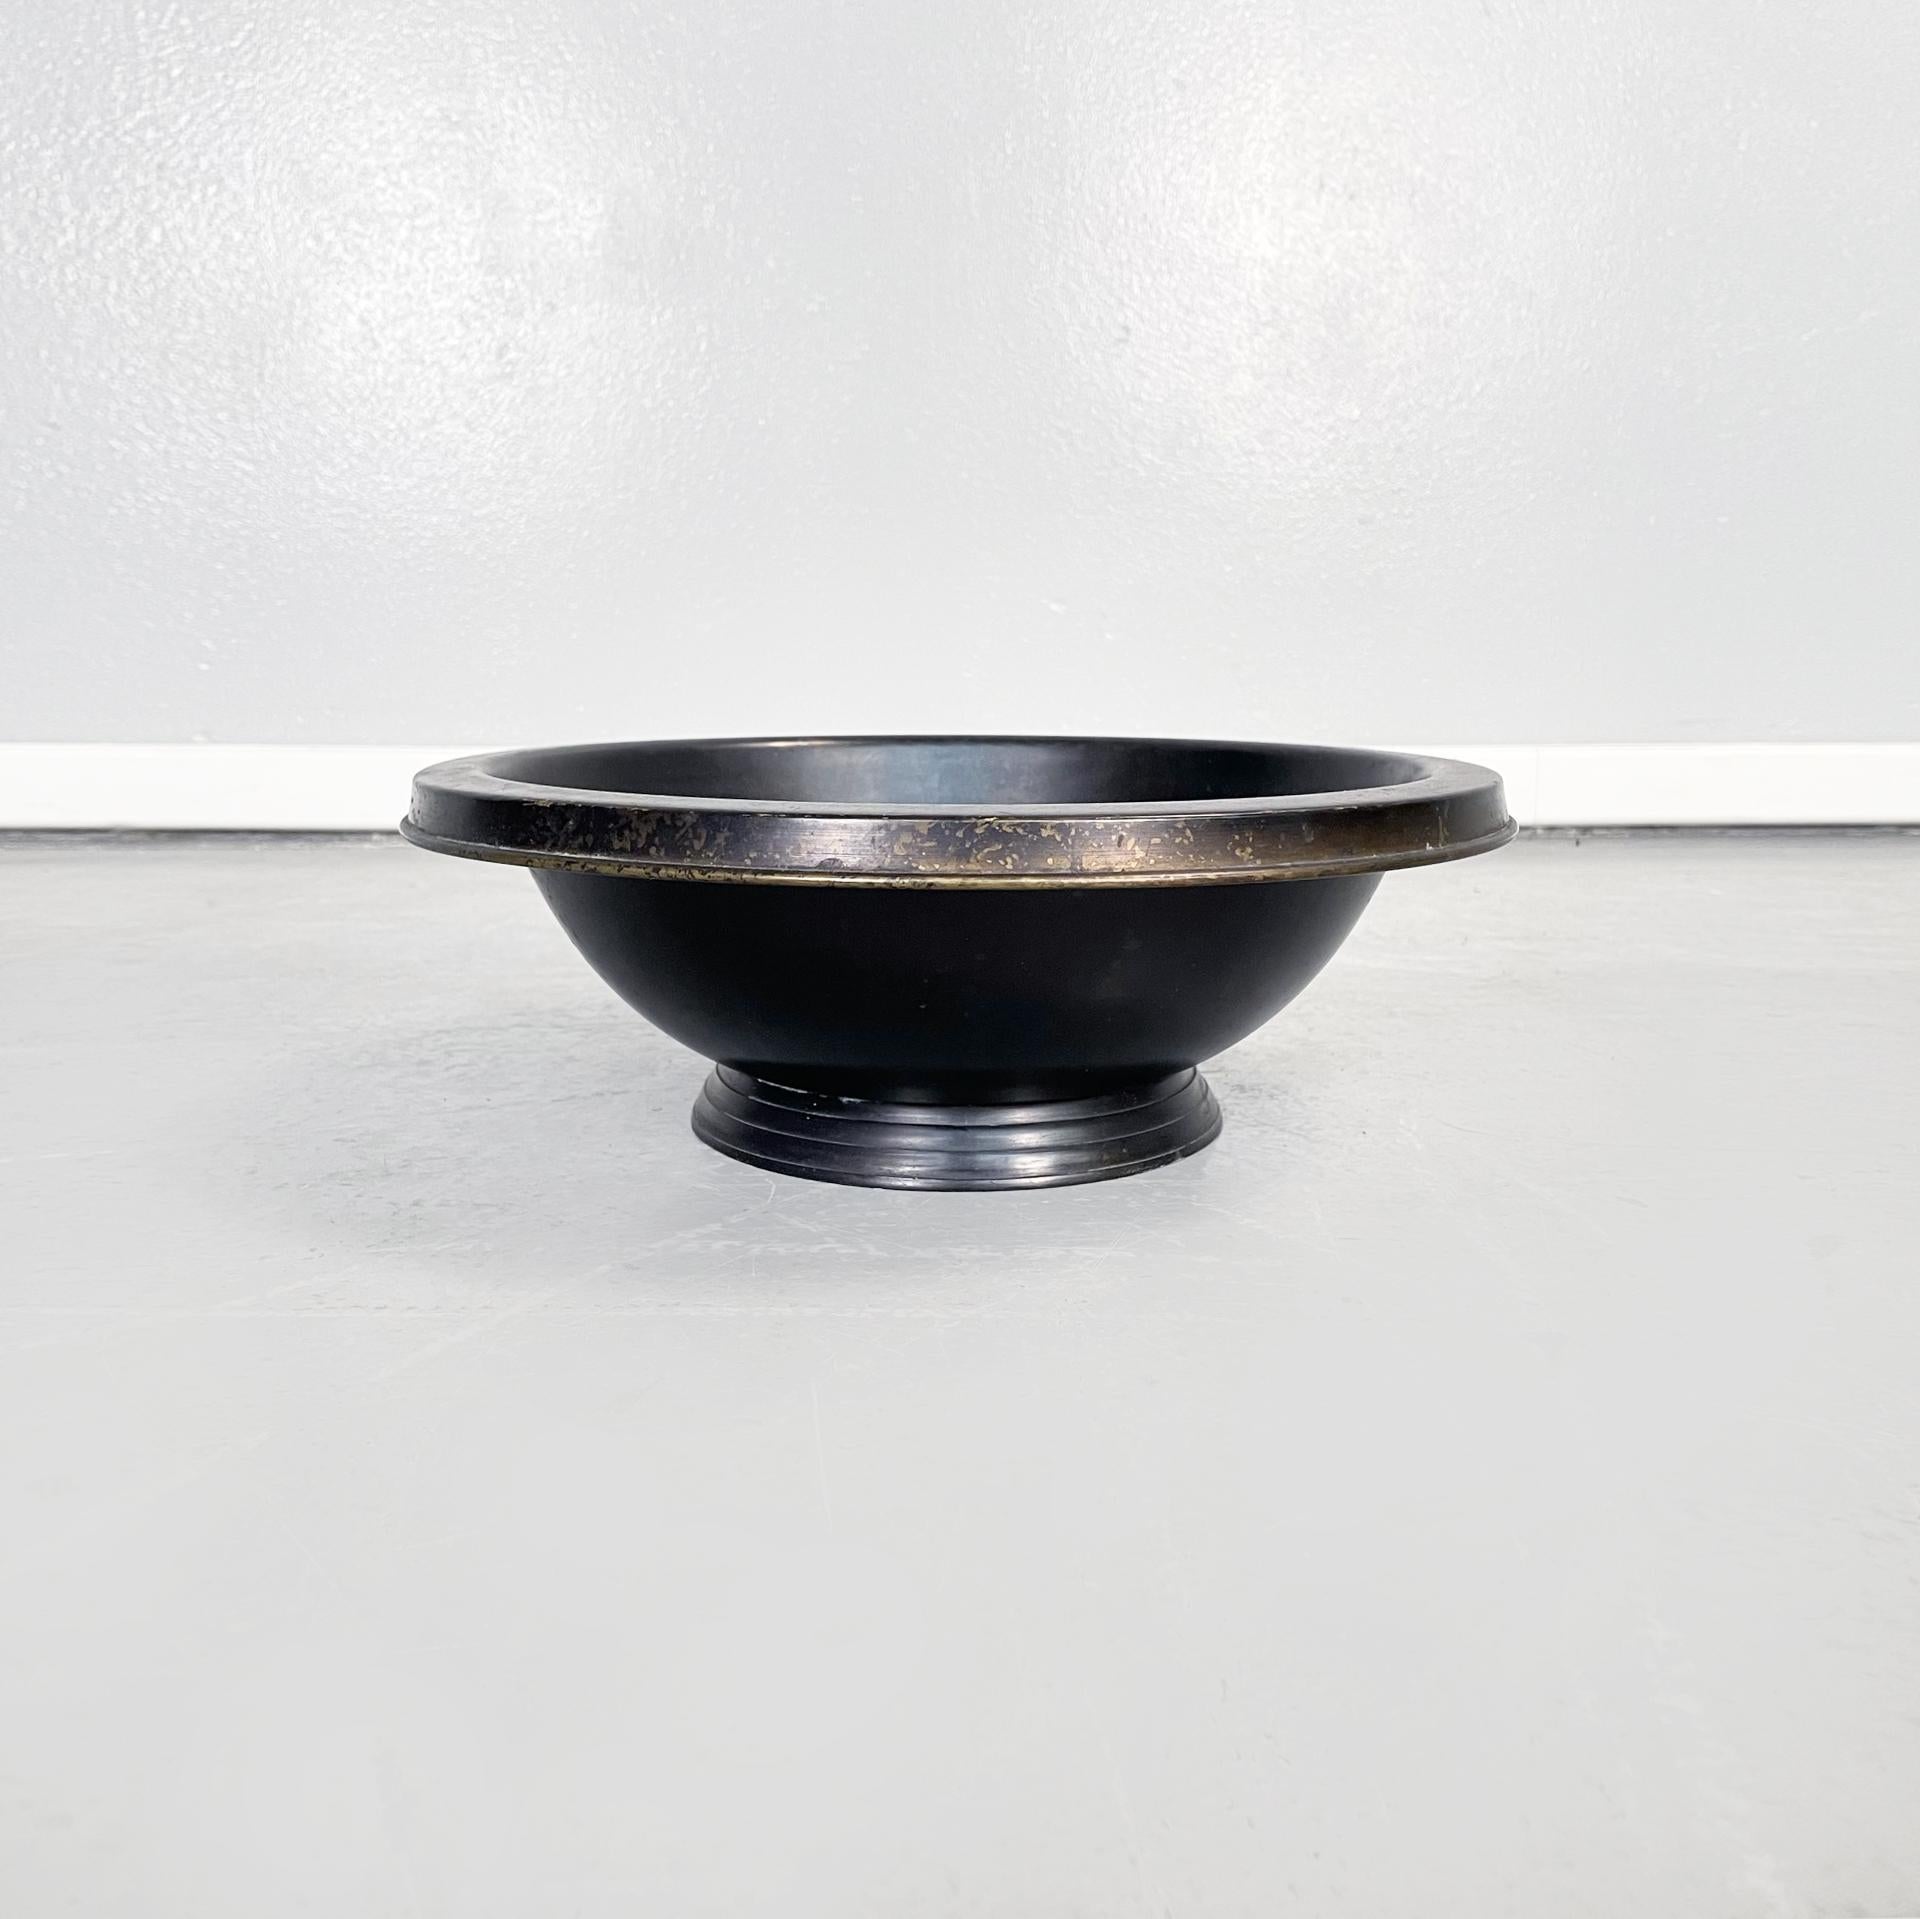 Italienische Moderne Runder Schalenaufsatz aus schwarz lackiertem Metall, 1990er Jahre
Runde Vintage-Schale aus schwarz lackiertem Metall. Der zentrale Teil besteht aus einer Halbkugel mit vorstehendem Profil, die auf einem runden Sockel ruht.